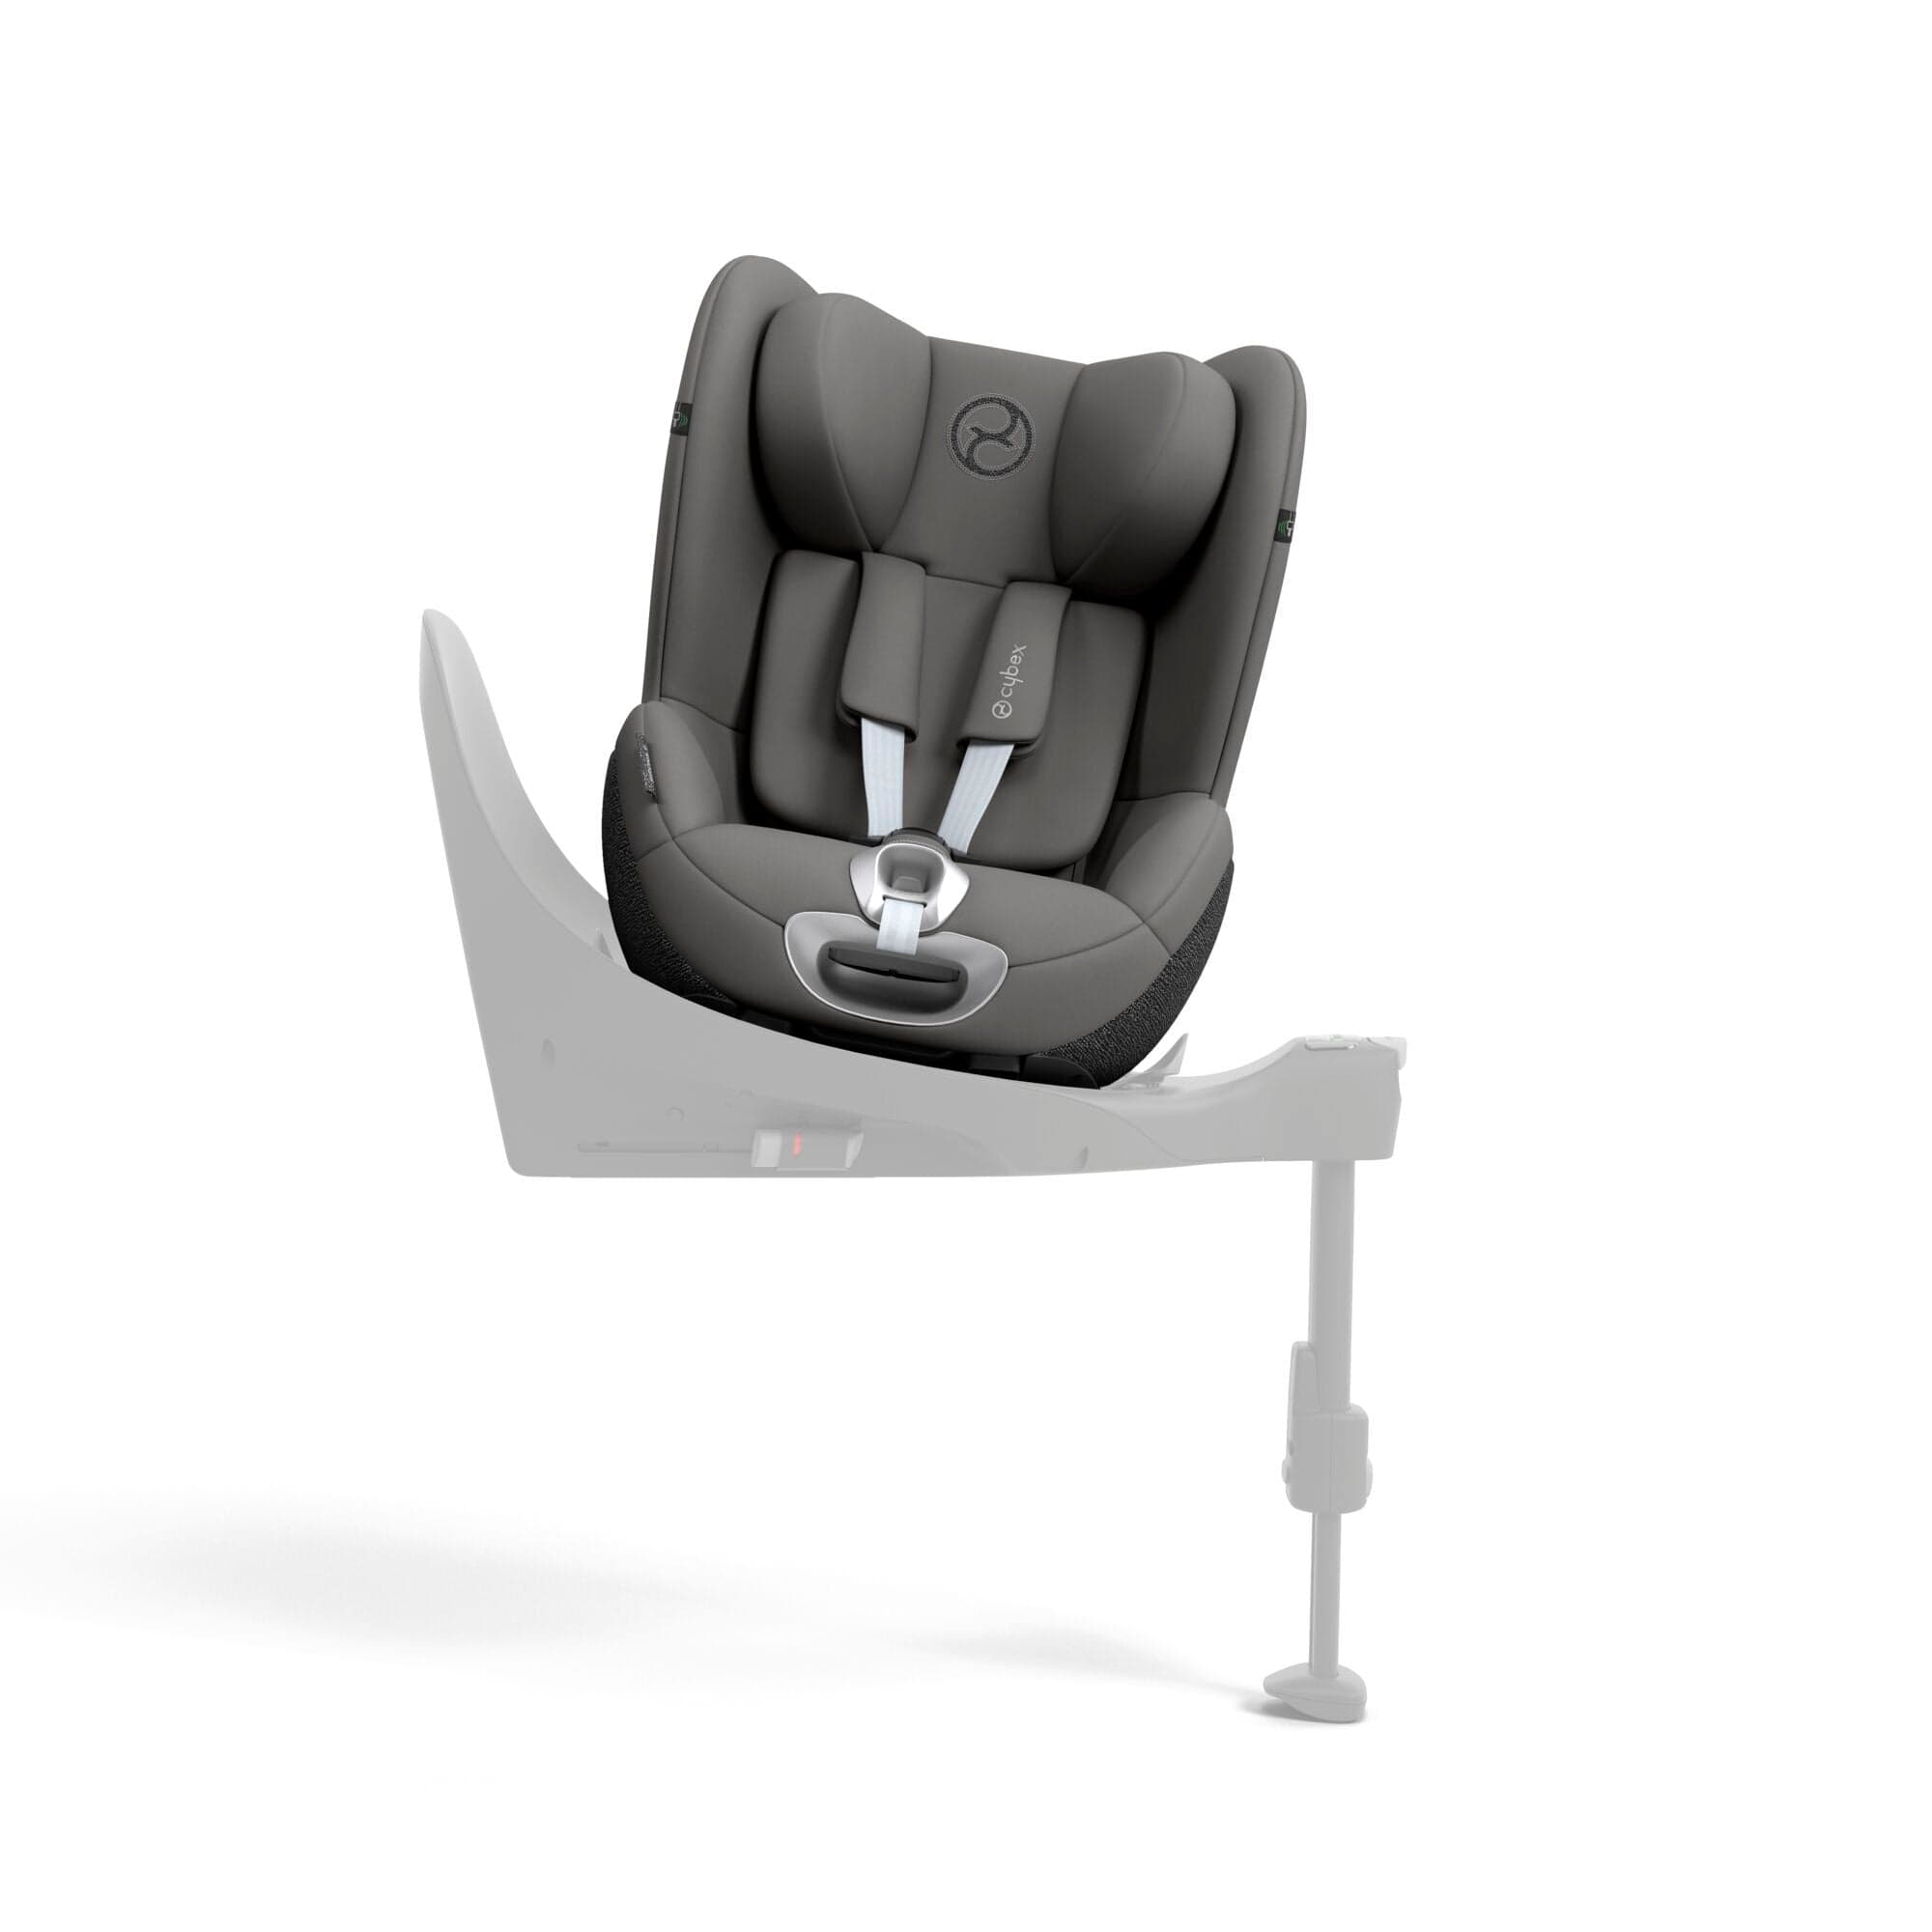 Cybex baby car seats Cybex Sirona T i-Size in Mirage Grey